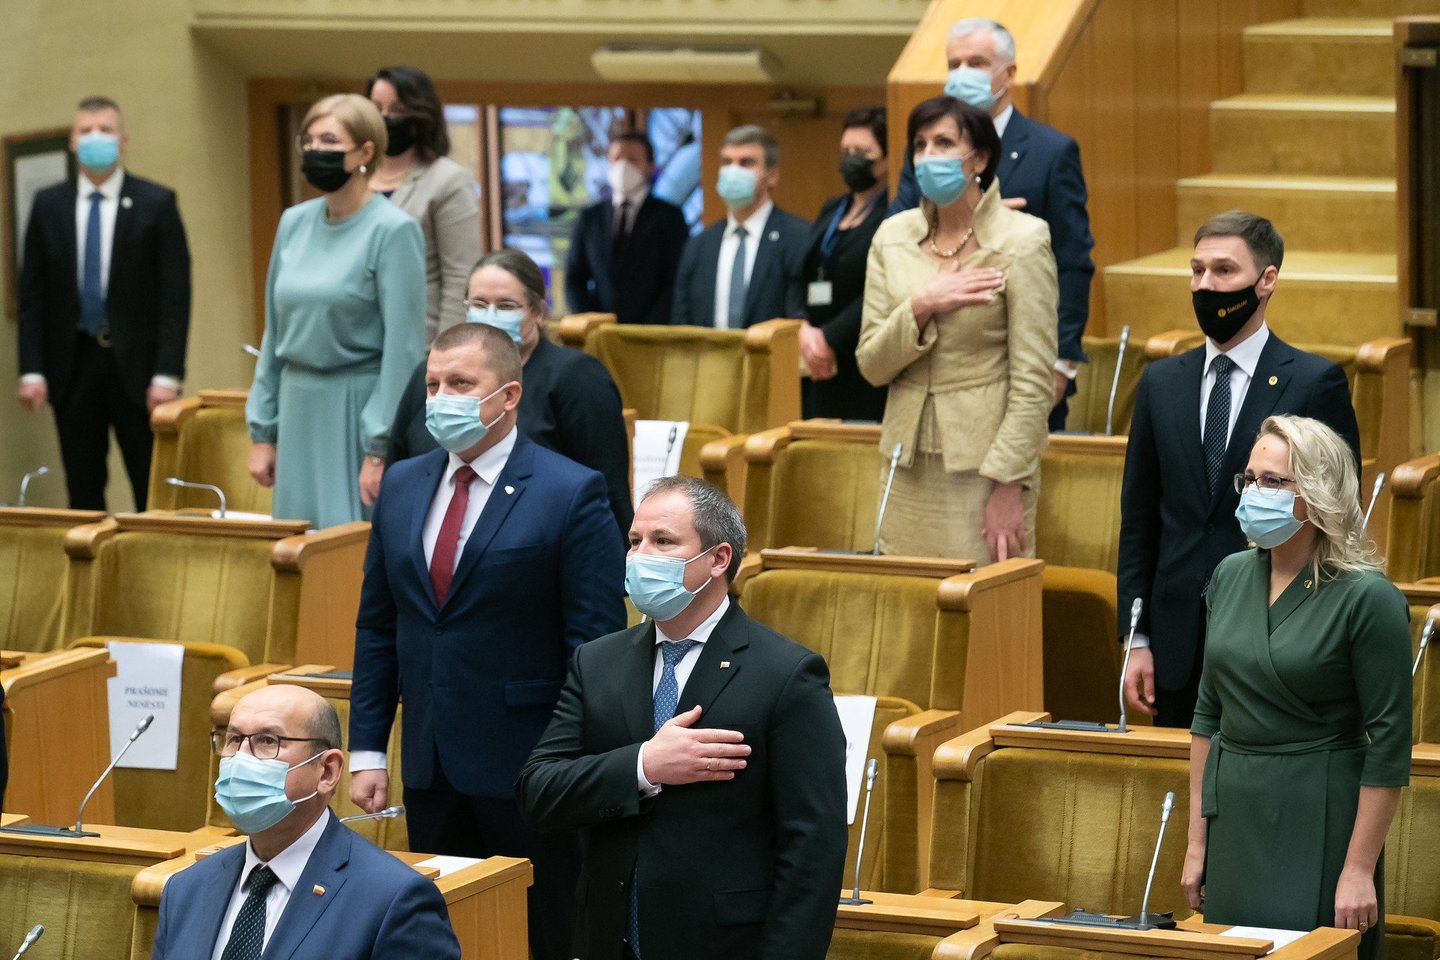 Penktadienis 13-oji – diena, kai prisiekė naujasis Seimas.<br>Seimo kanceliarijos nuotr. (aut. Olga Posaškova, Džoja Gunda Barysaitė)